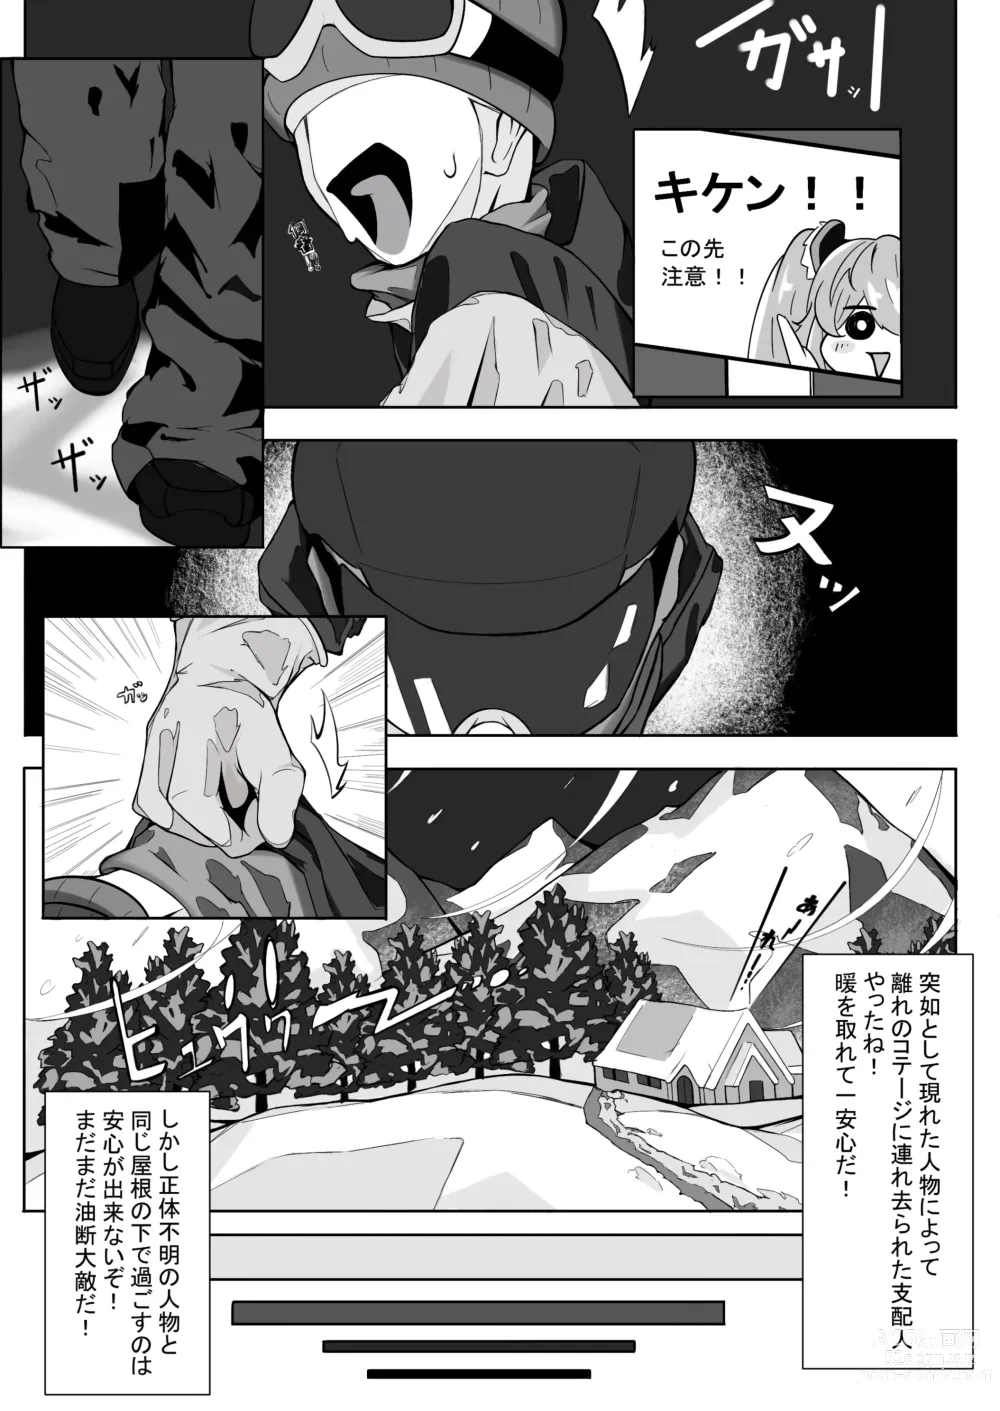 Page 4 of doujinshi Shirogane no Nettaiya